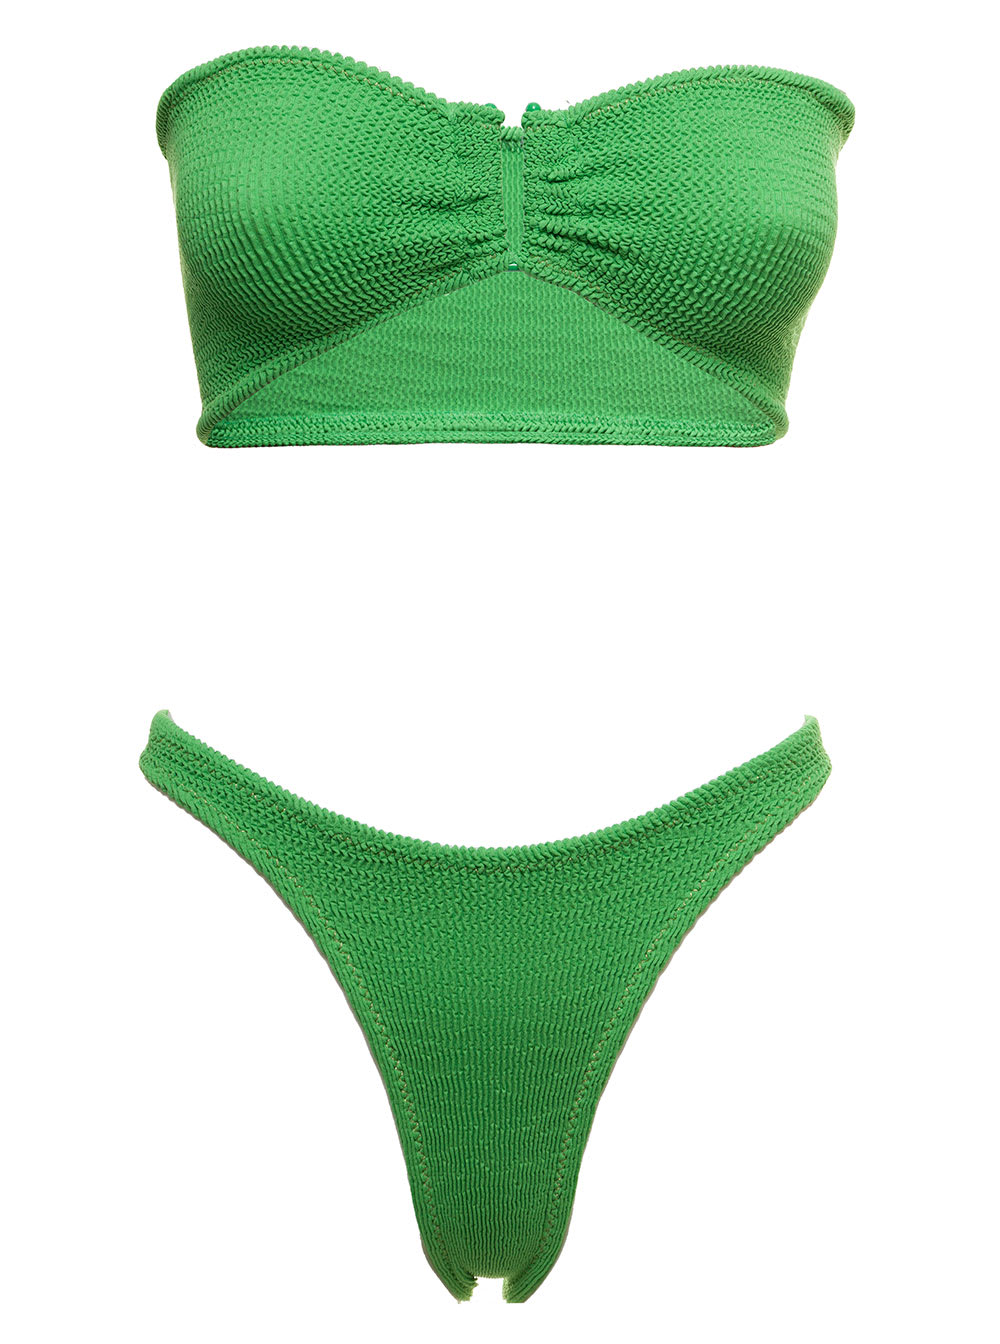 Reina Olga Womans Ausilia Scrunch Green Emerald Bikini